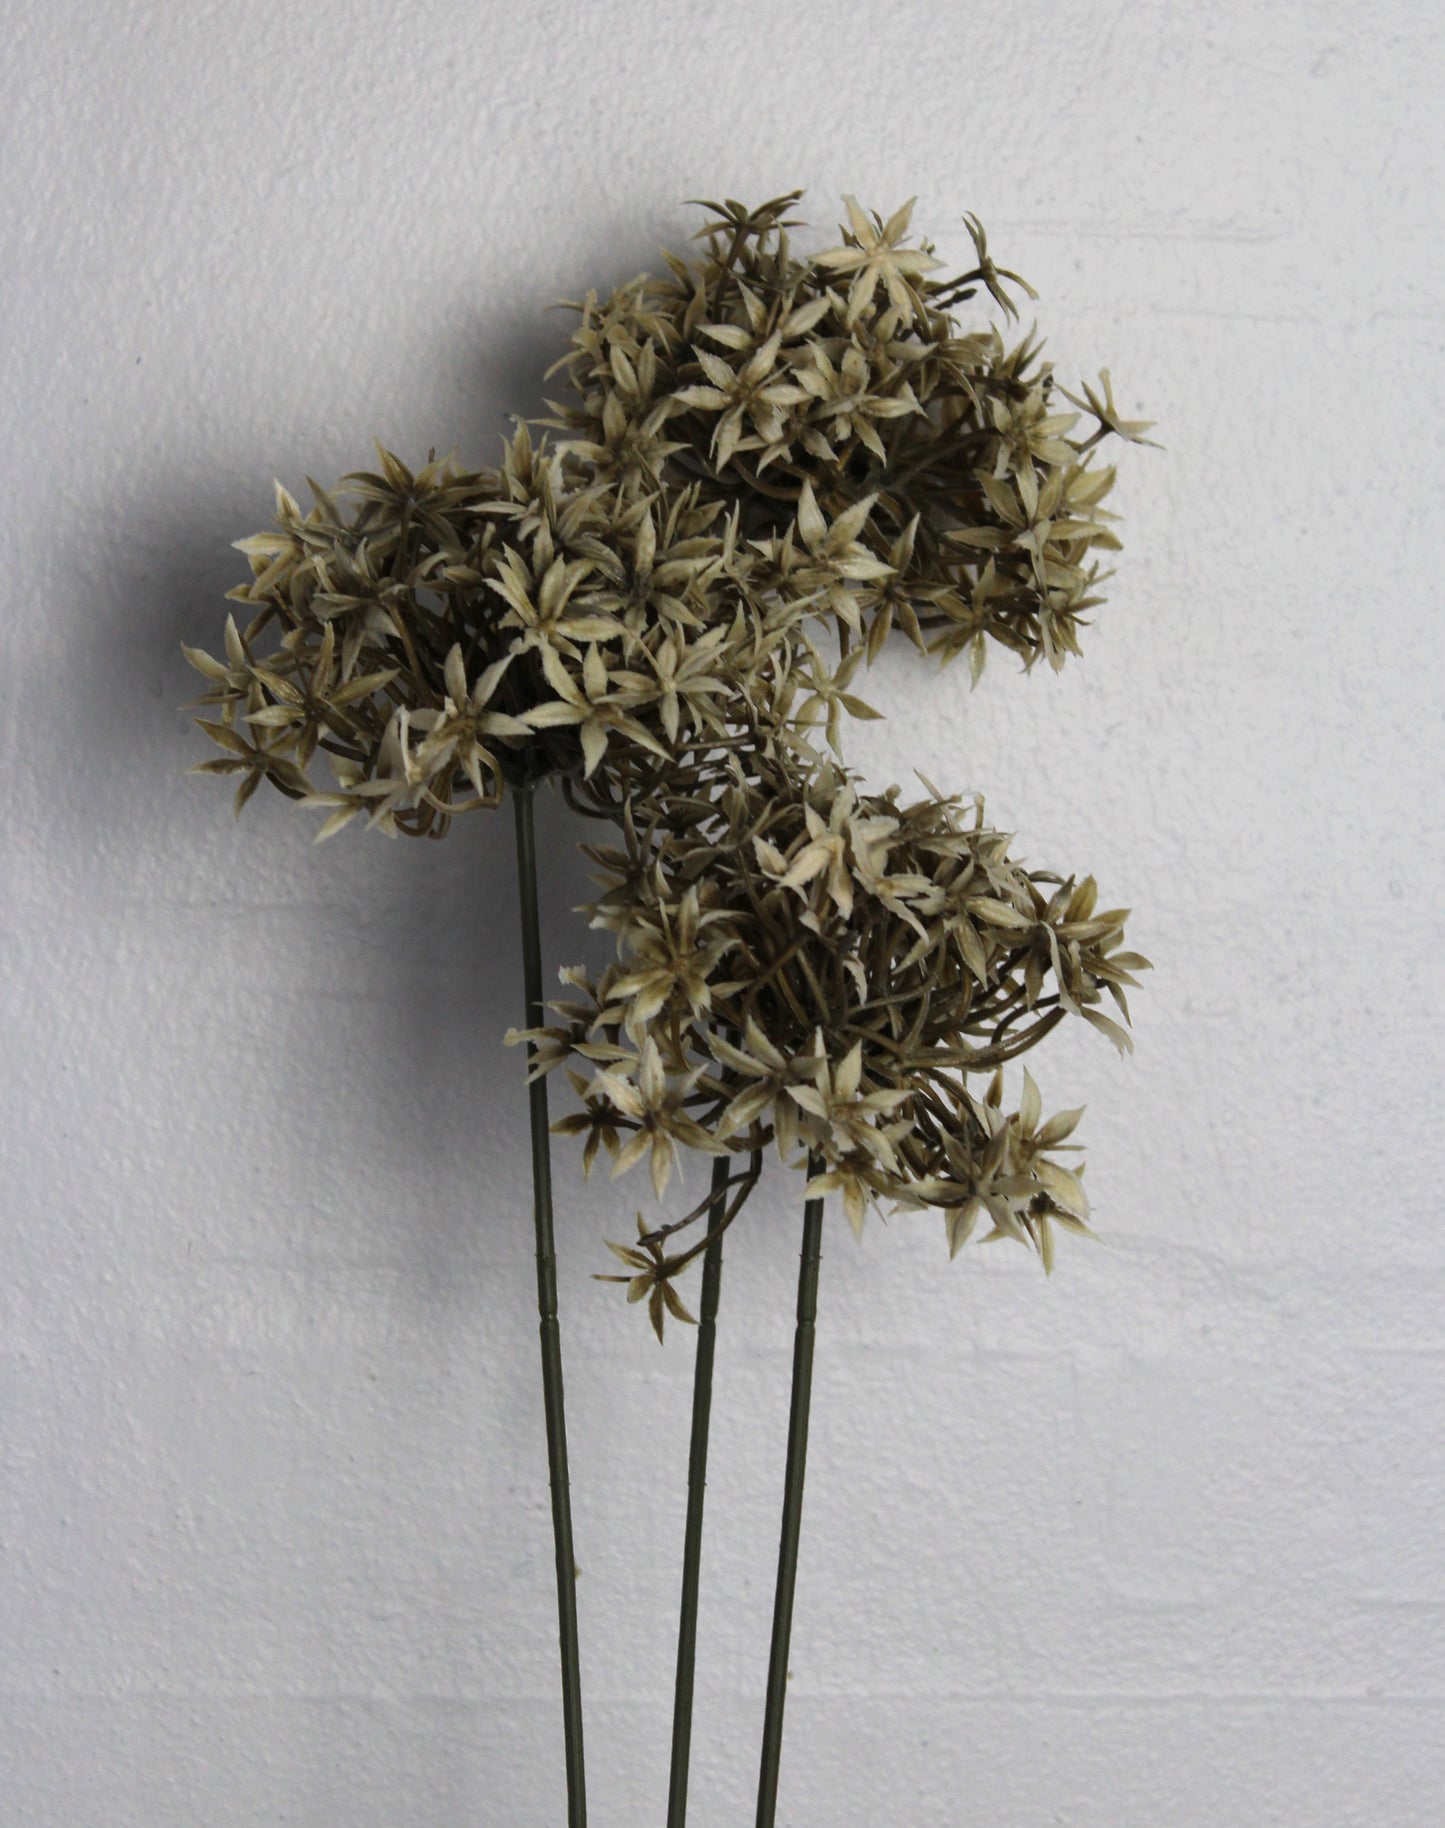 Deko Florale - 2 stk Kunstig Allium (prydløg) stilke med 3 hoveder på hver H 60 cm, creme farve